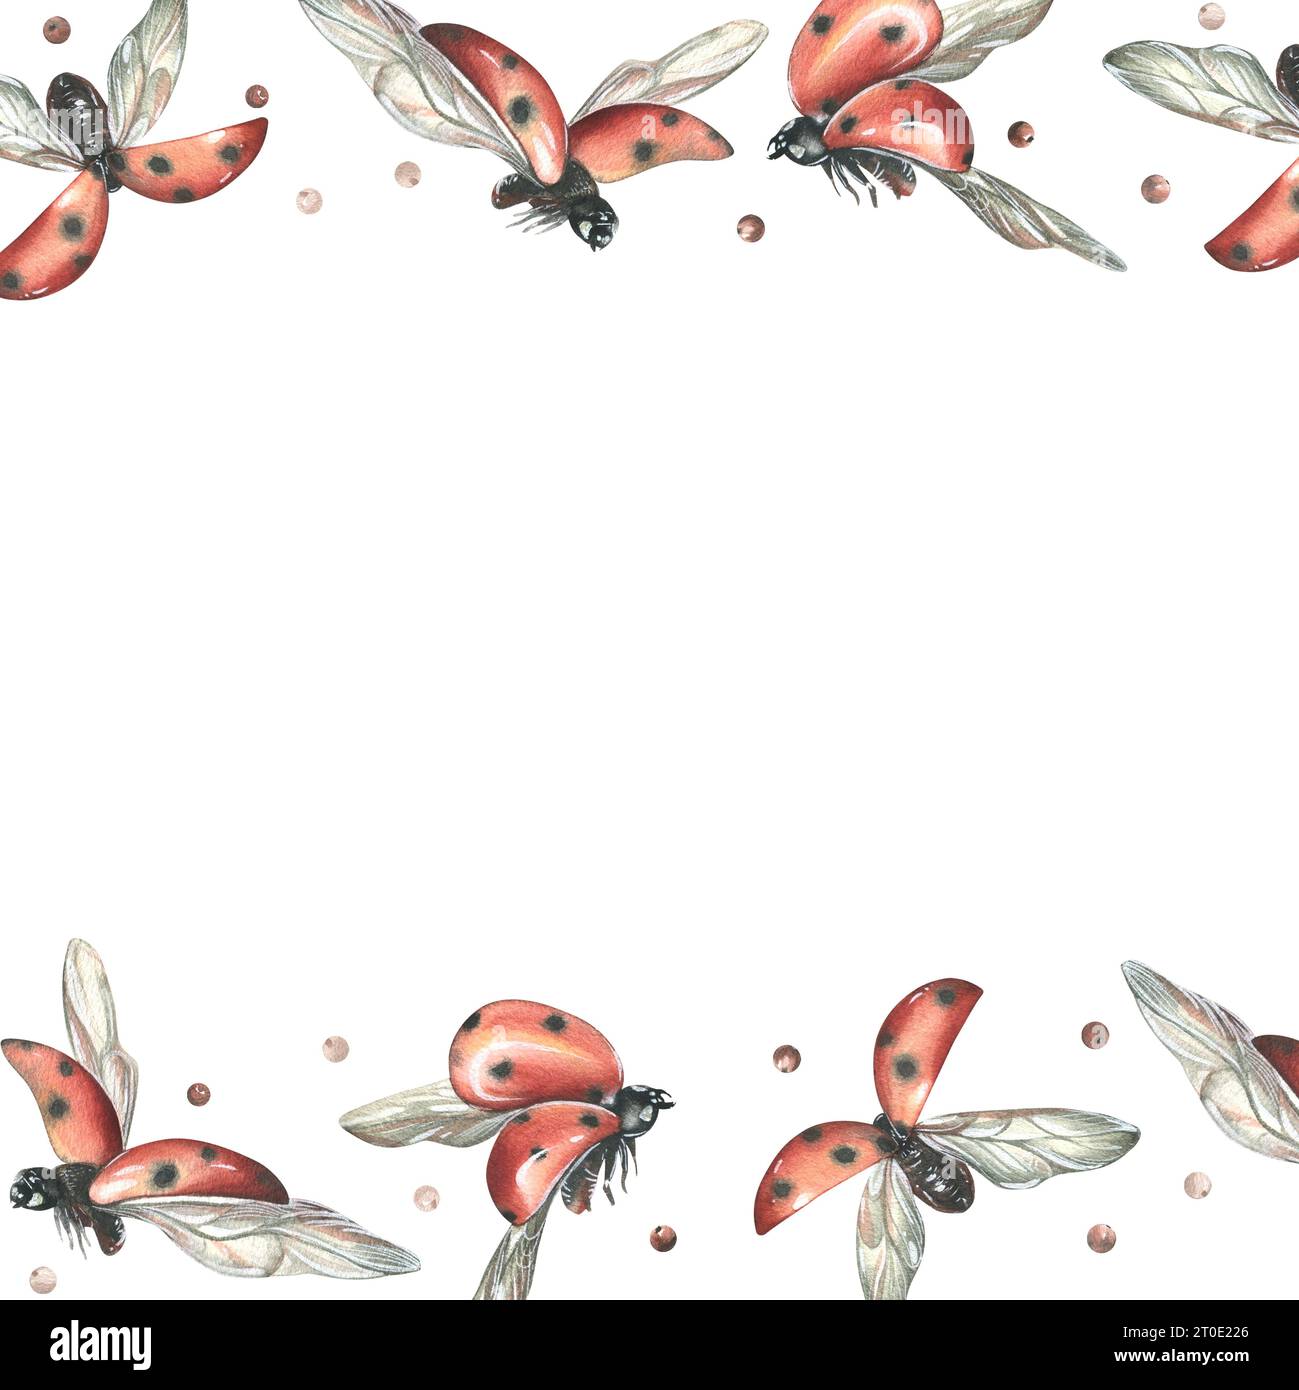 Coccinelles rouges avec des points noirs volant avec des branches de pommier. Illustration à l'aquarelle dessinée à la main. Modèle, cadre sur un fond blanc Banque D'Images